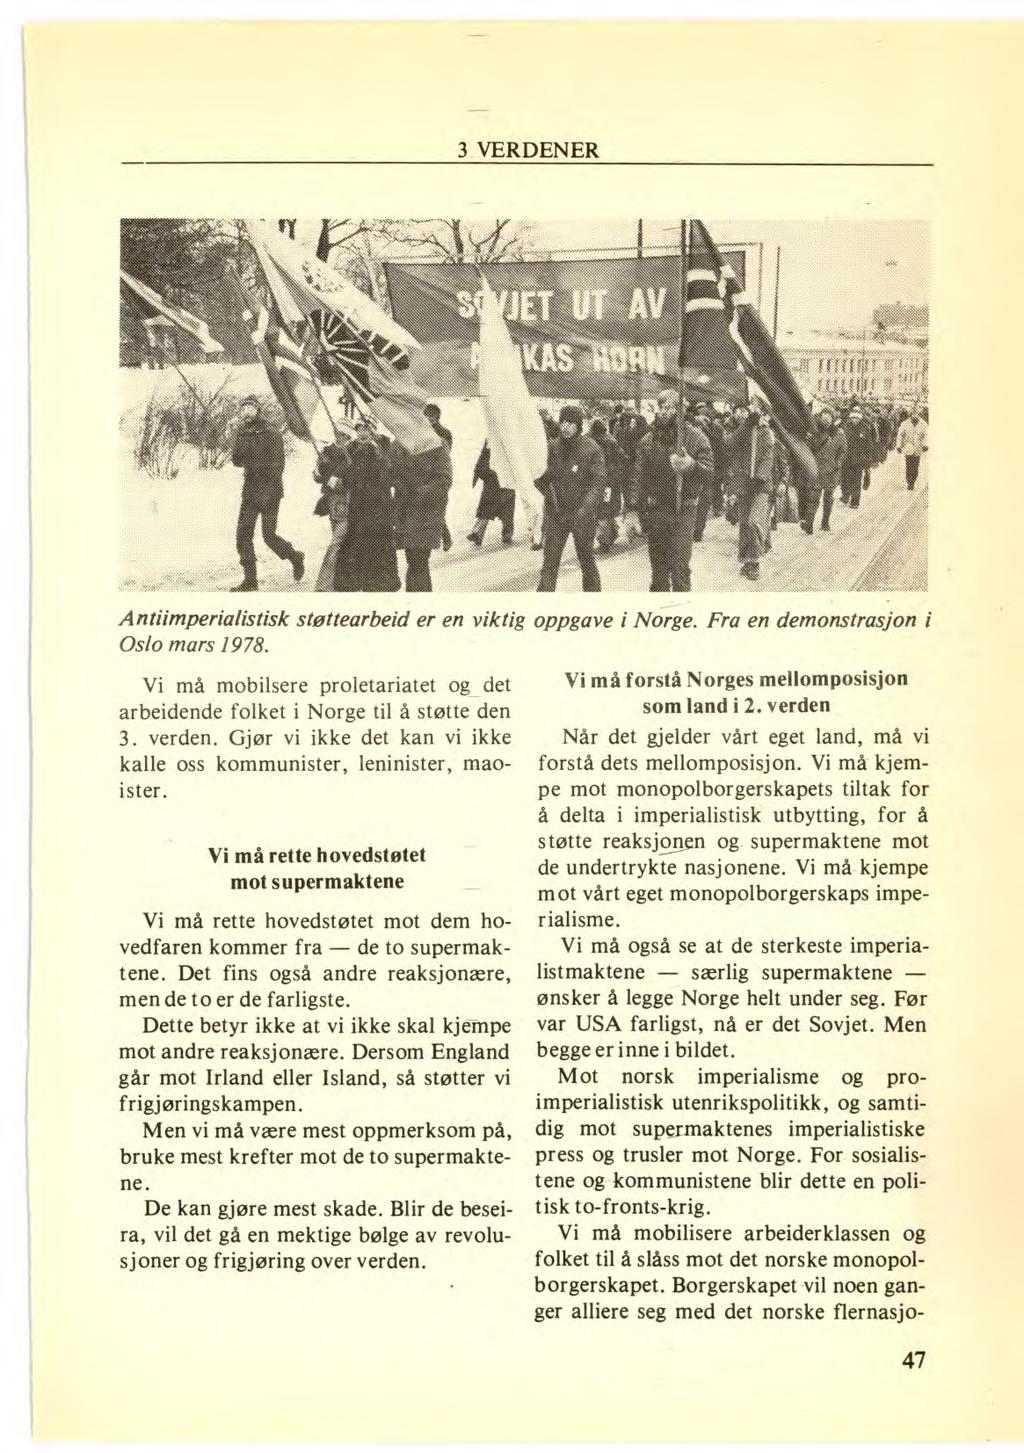 Antiimperialistisk støttearbeid er en viktig Oslo mars 1978. Vi må mobilsere proletariatet og det arbeidende folket i Norge til å støtte den 3. verden.